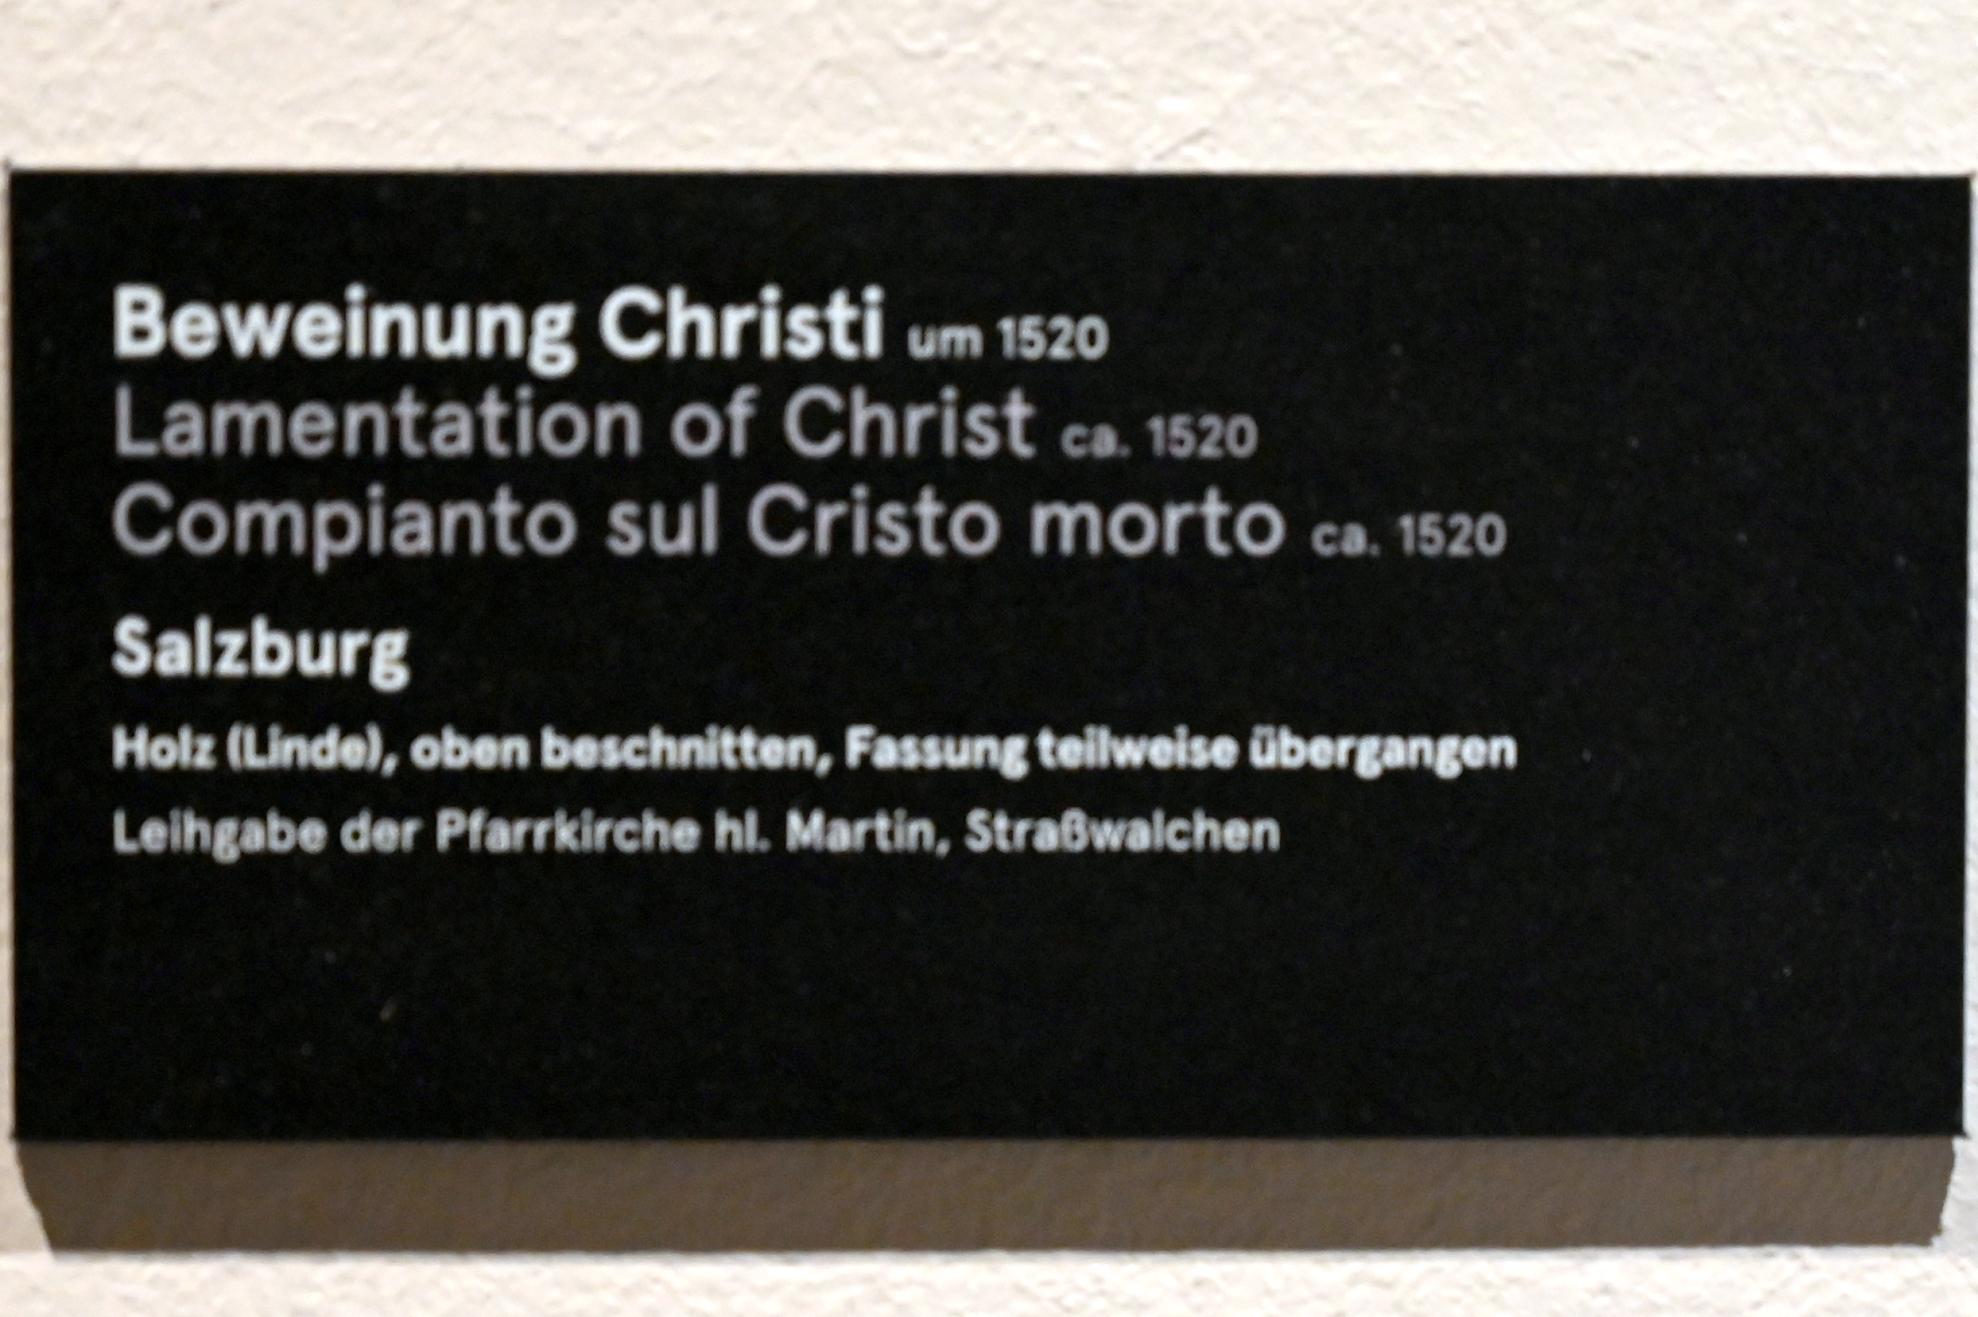 Beweinung Christi, Salzburg, Dommuseum Salzburg, um 1520, Bild 2/2